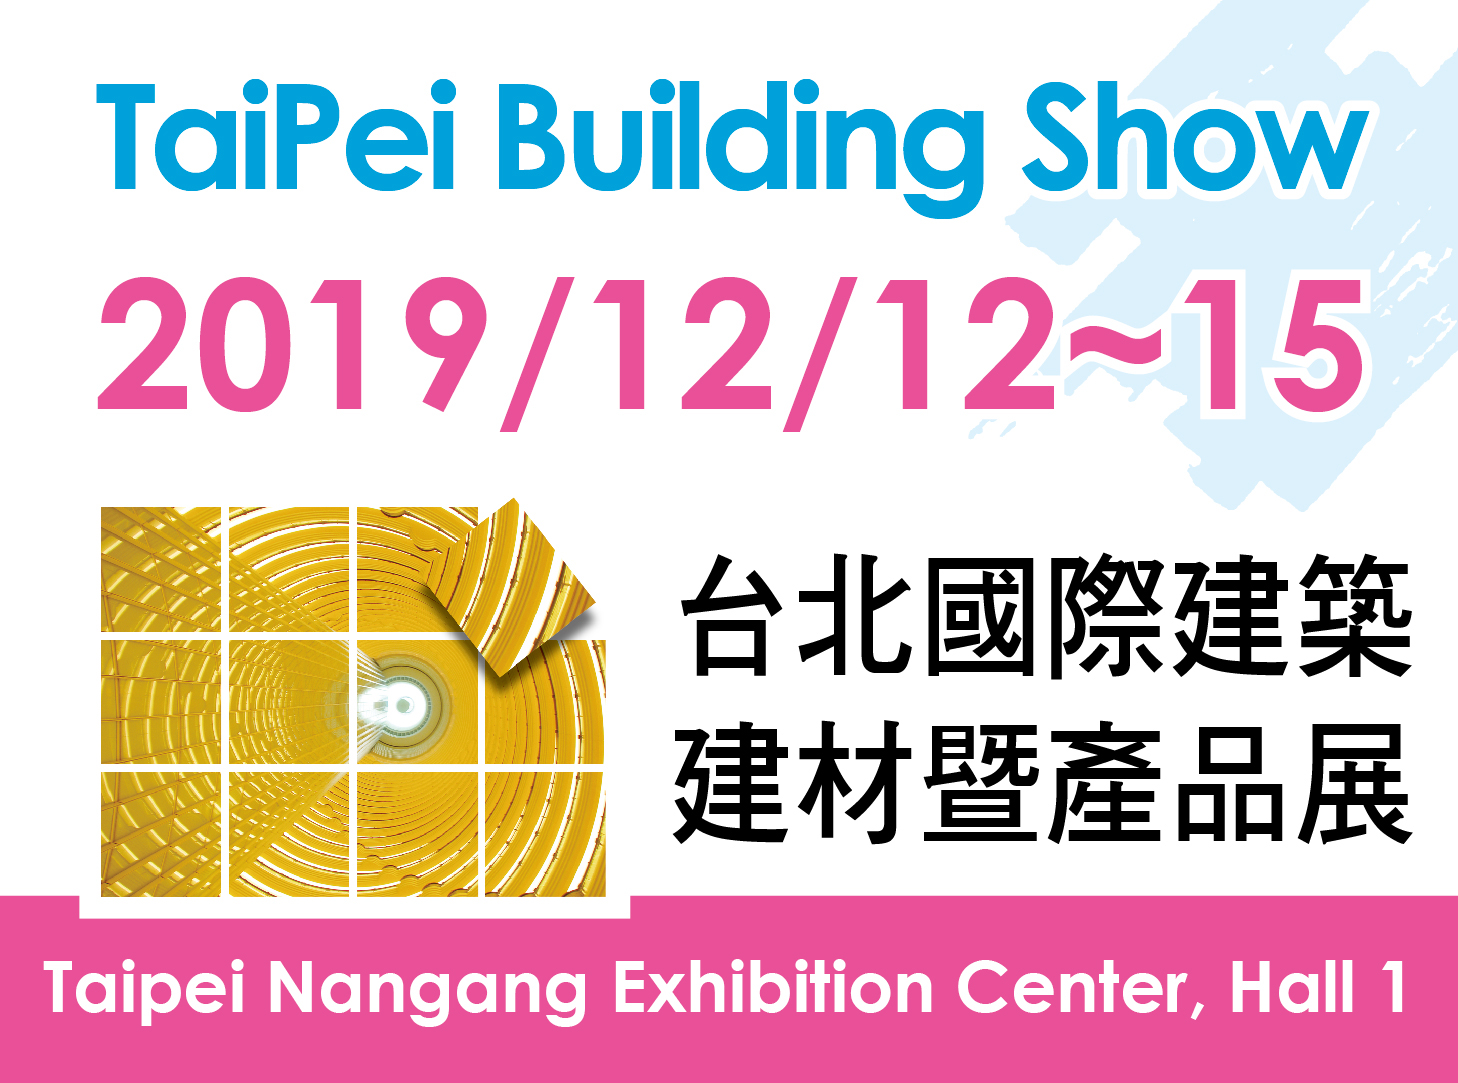 Taipei Building Show 2019